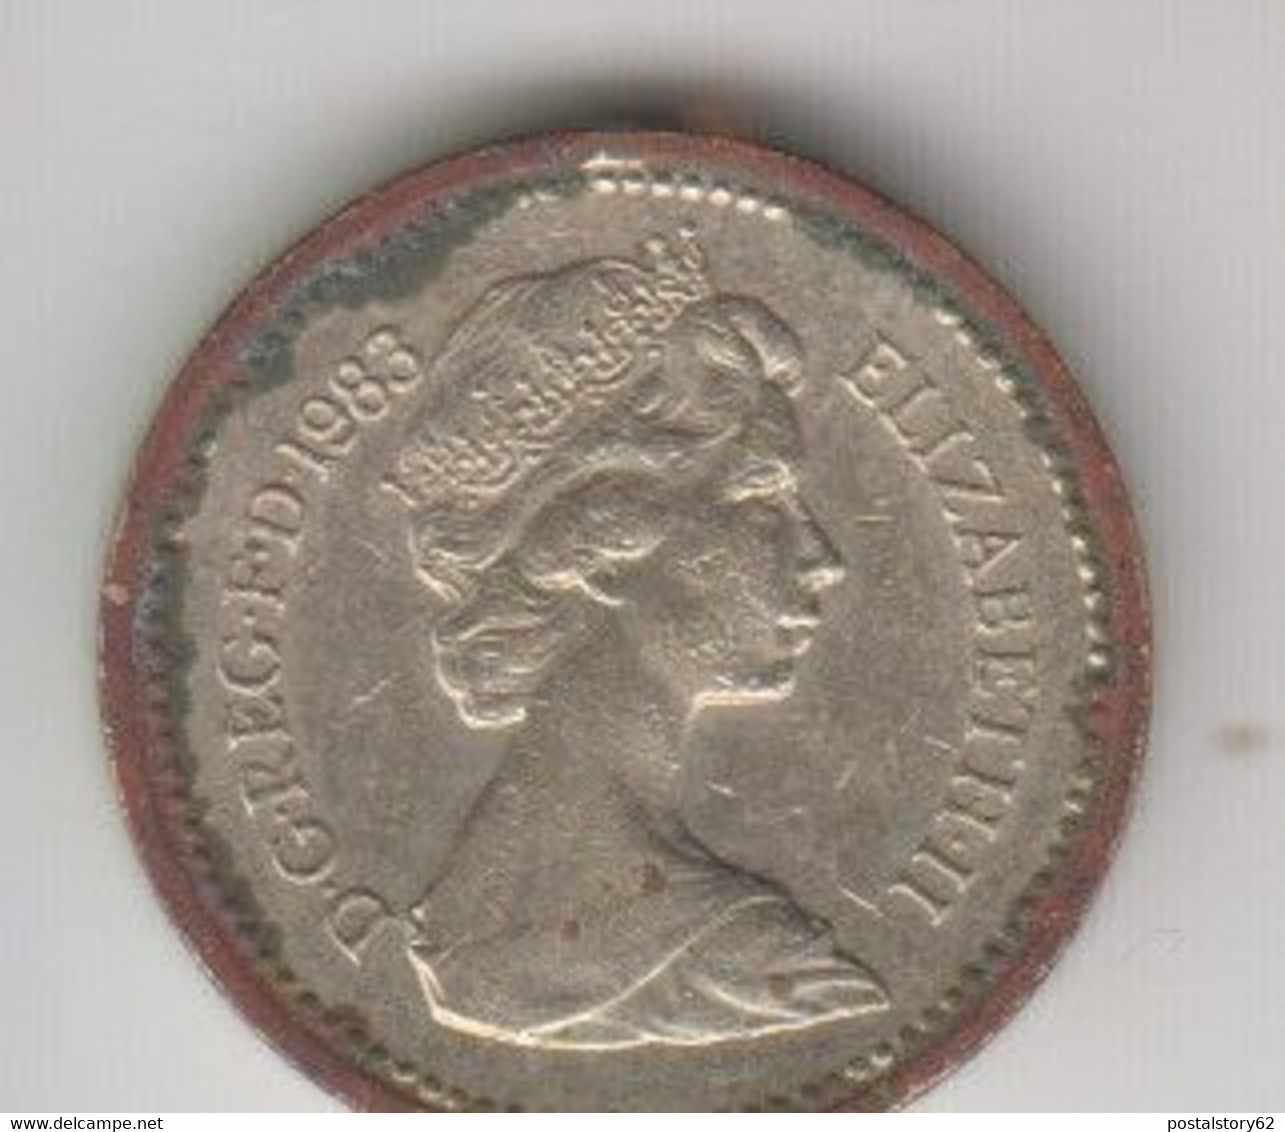 Gran Bretagna -One Pound 1983 - - 1 Pond